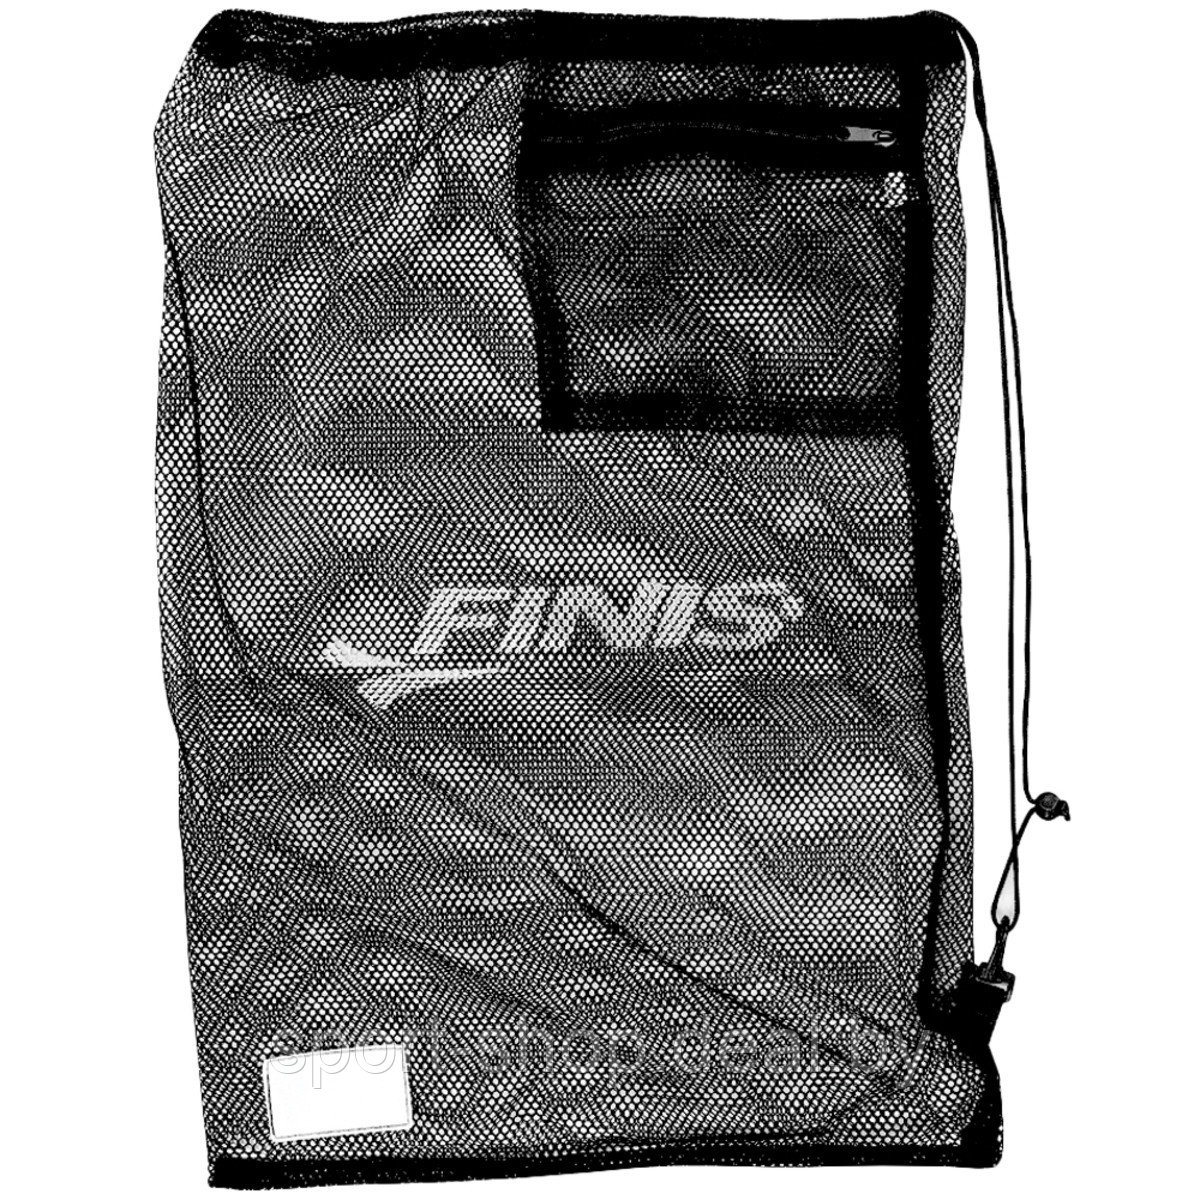 Сетка для инвентаря Mesh Gear Bag Black 1.25.030.101, сумка для бассейна, сумка мешок, спортивный мешок